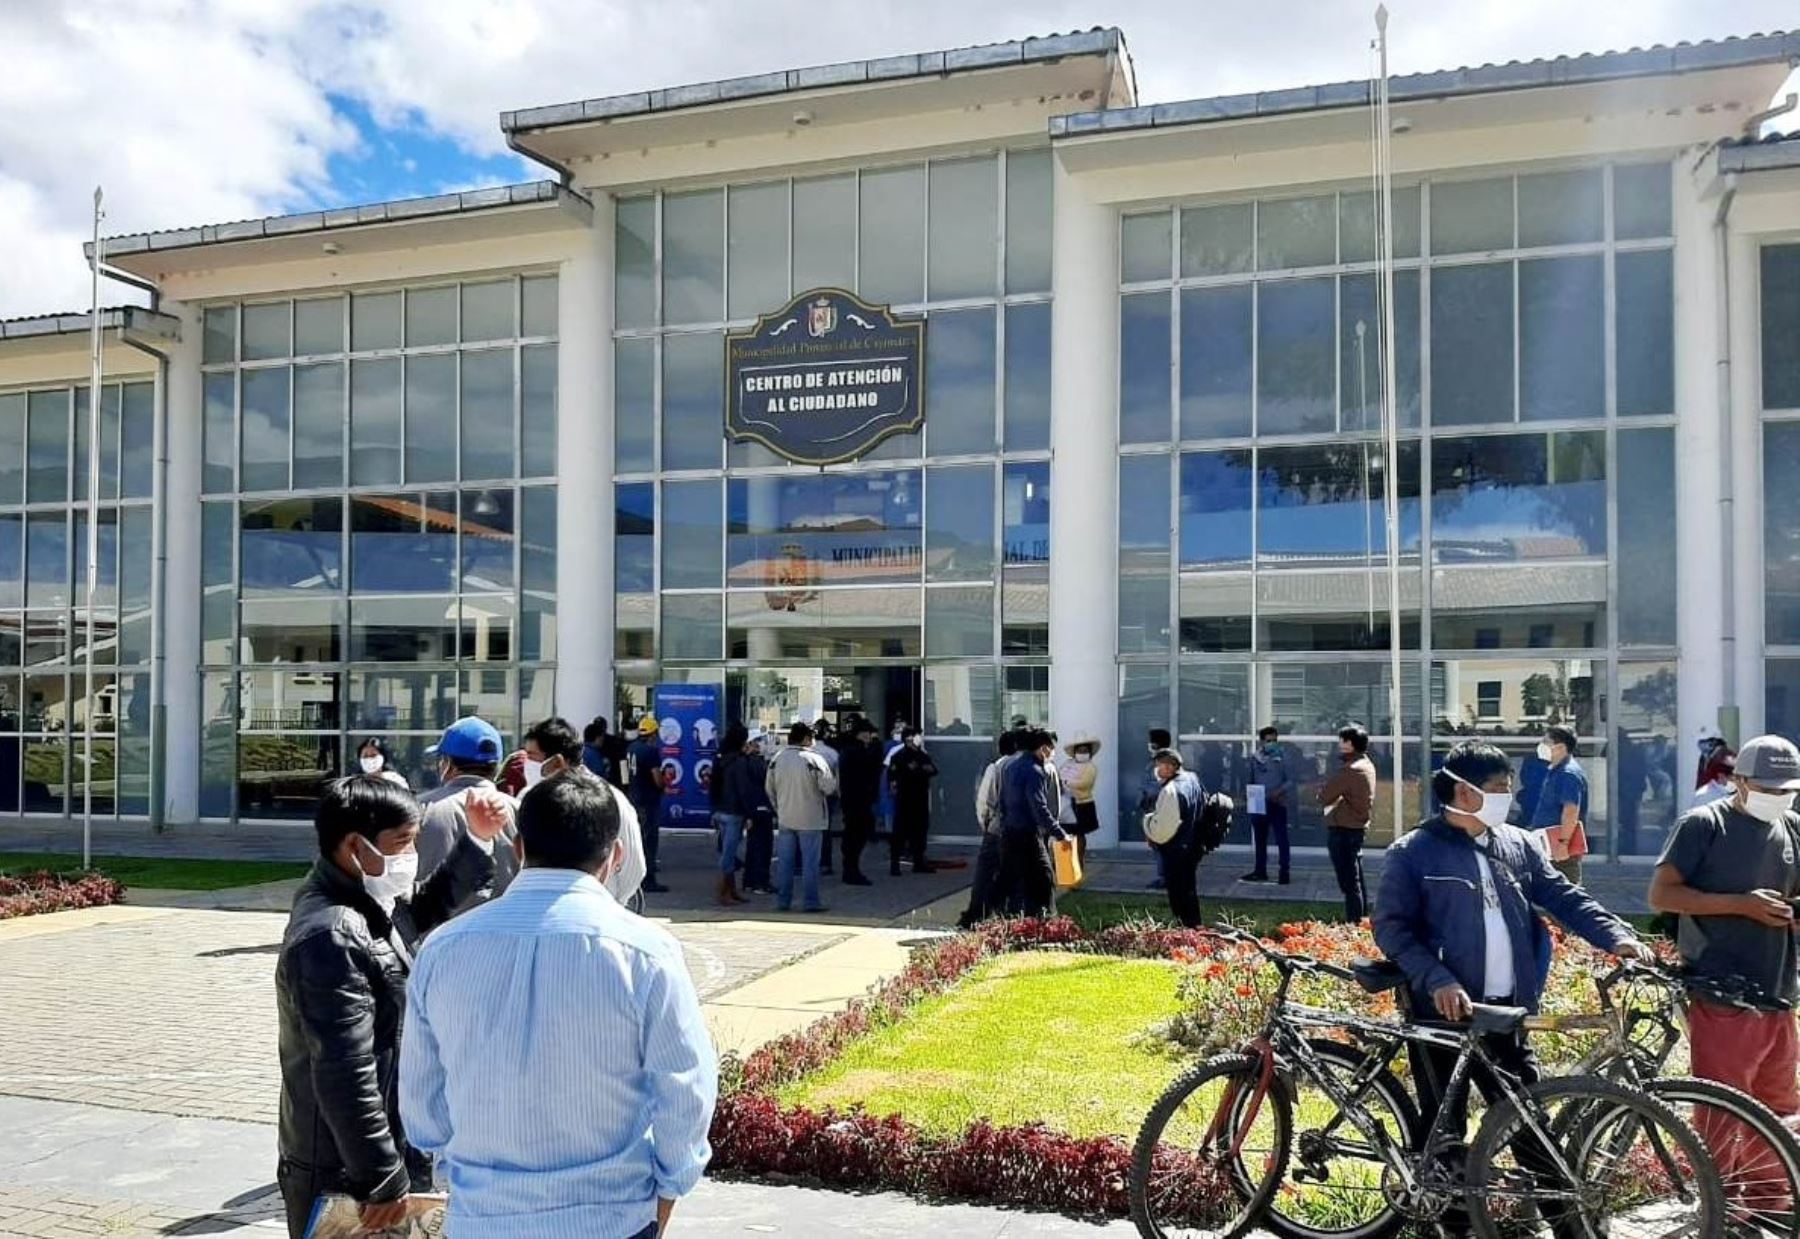 La Municipalidad de Cajamarca otorga diversos beneficios tributarios, como la exoneración del pago de diversos impuestos, para impulsar la economía local.